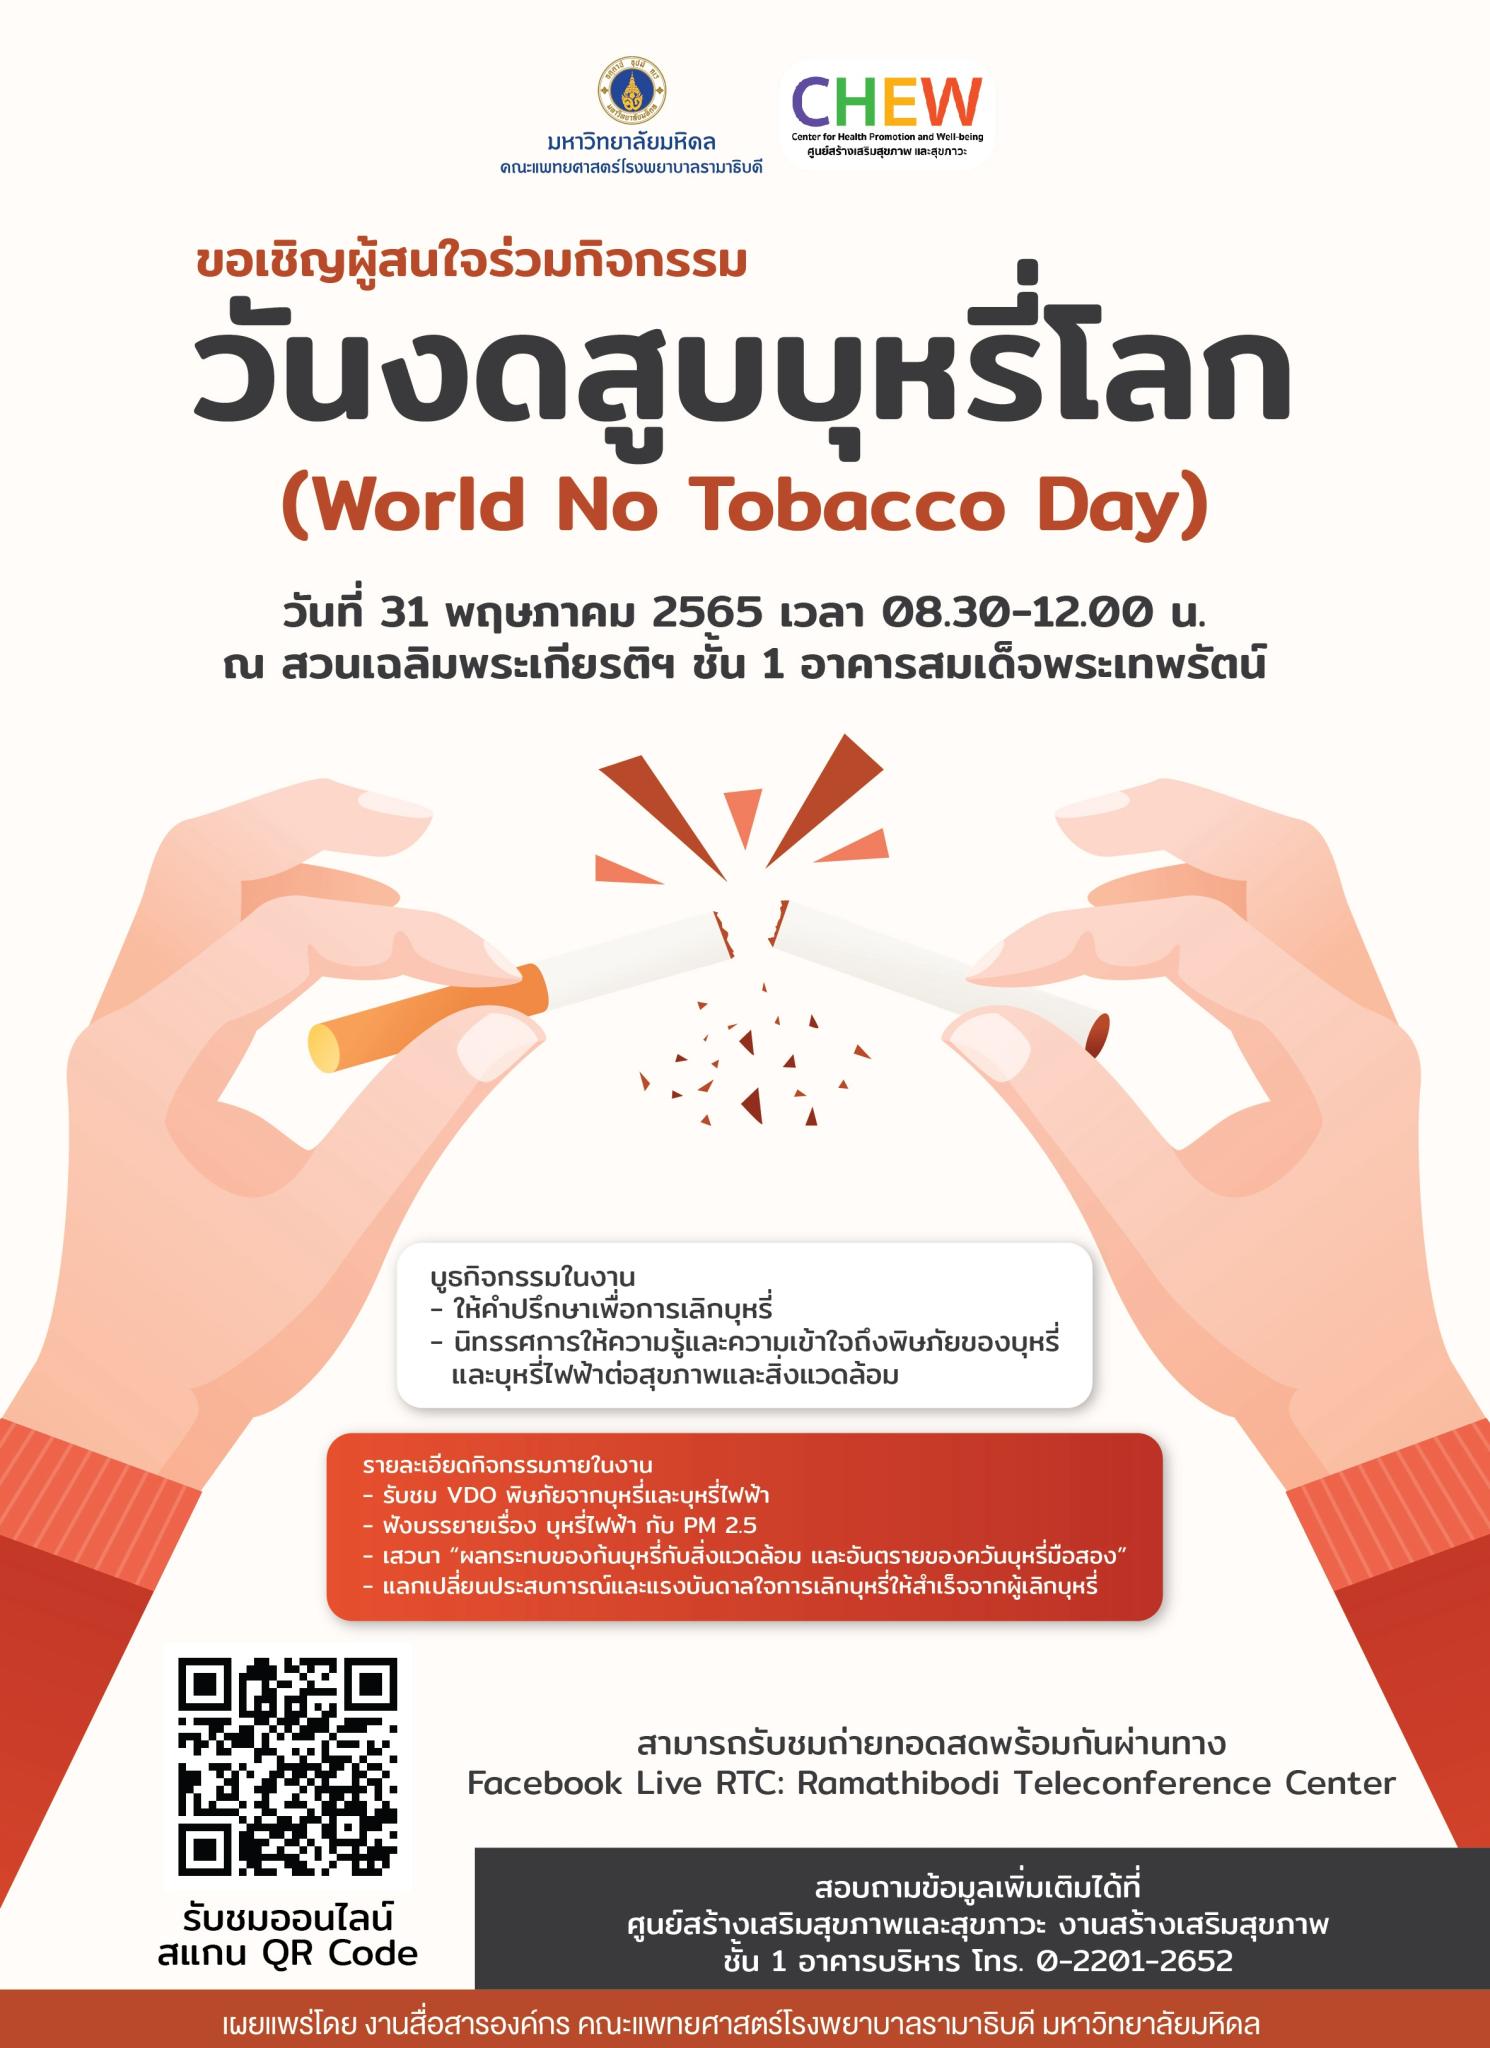 วันงดสูบบุหรี่โลก (World No Tobacco Day)